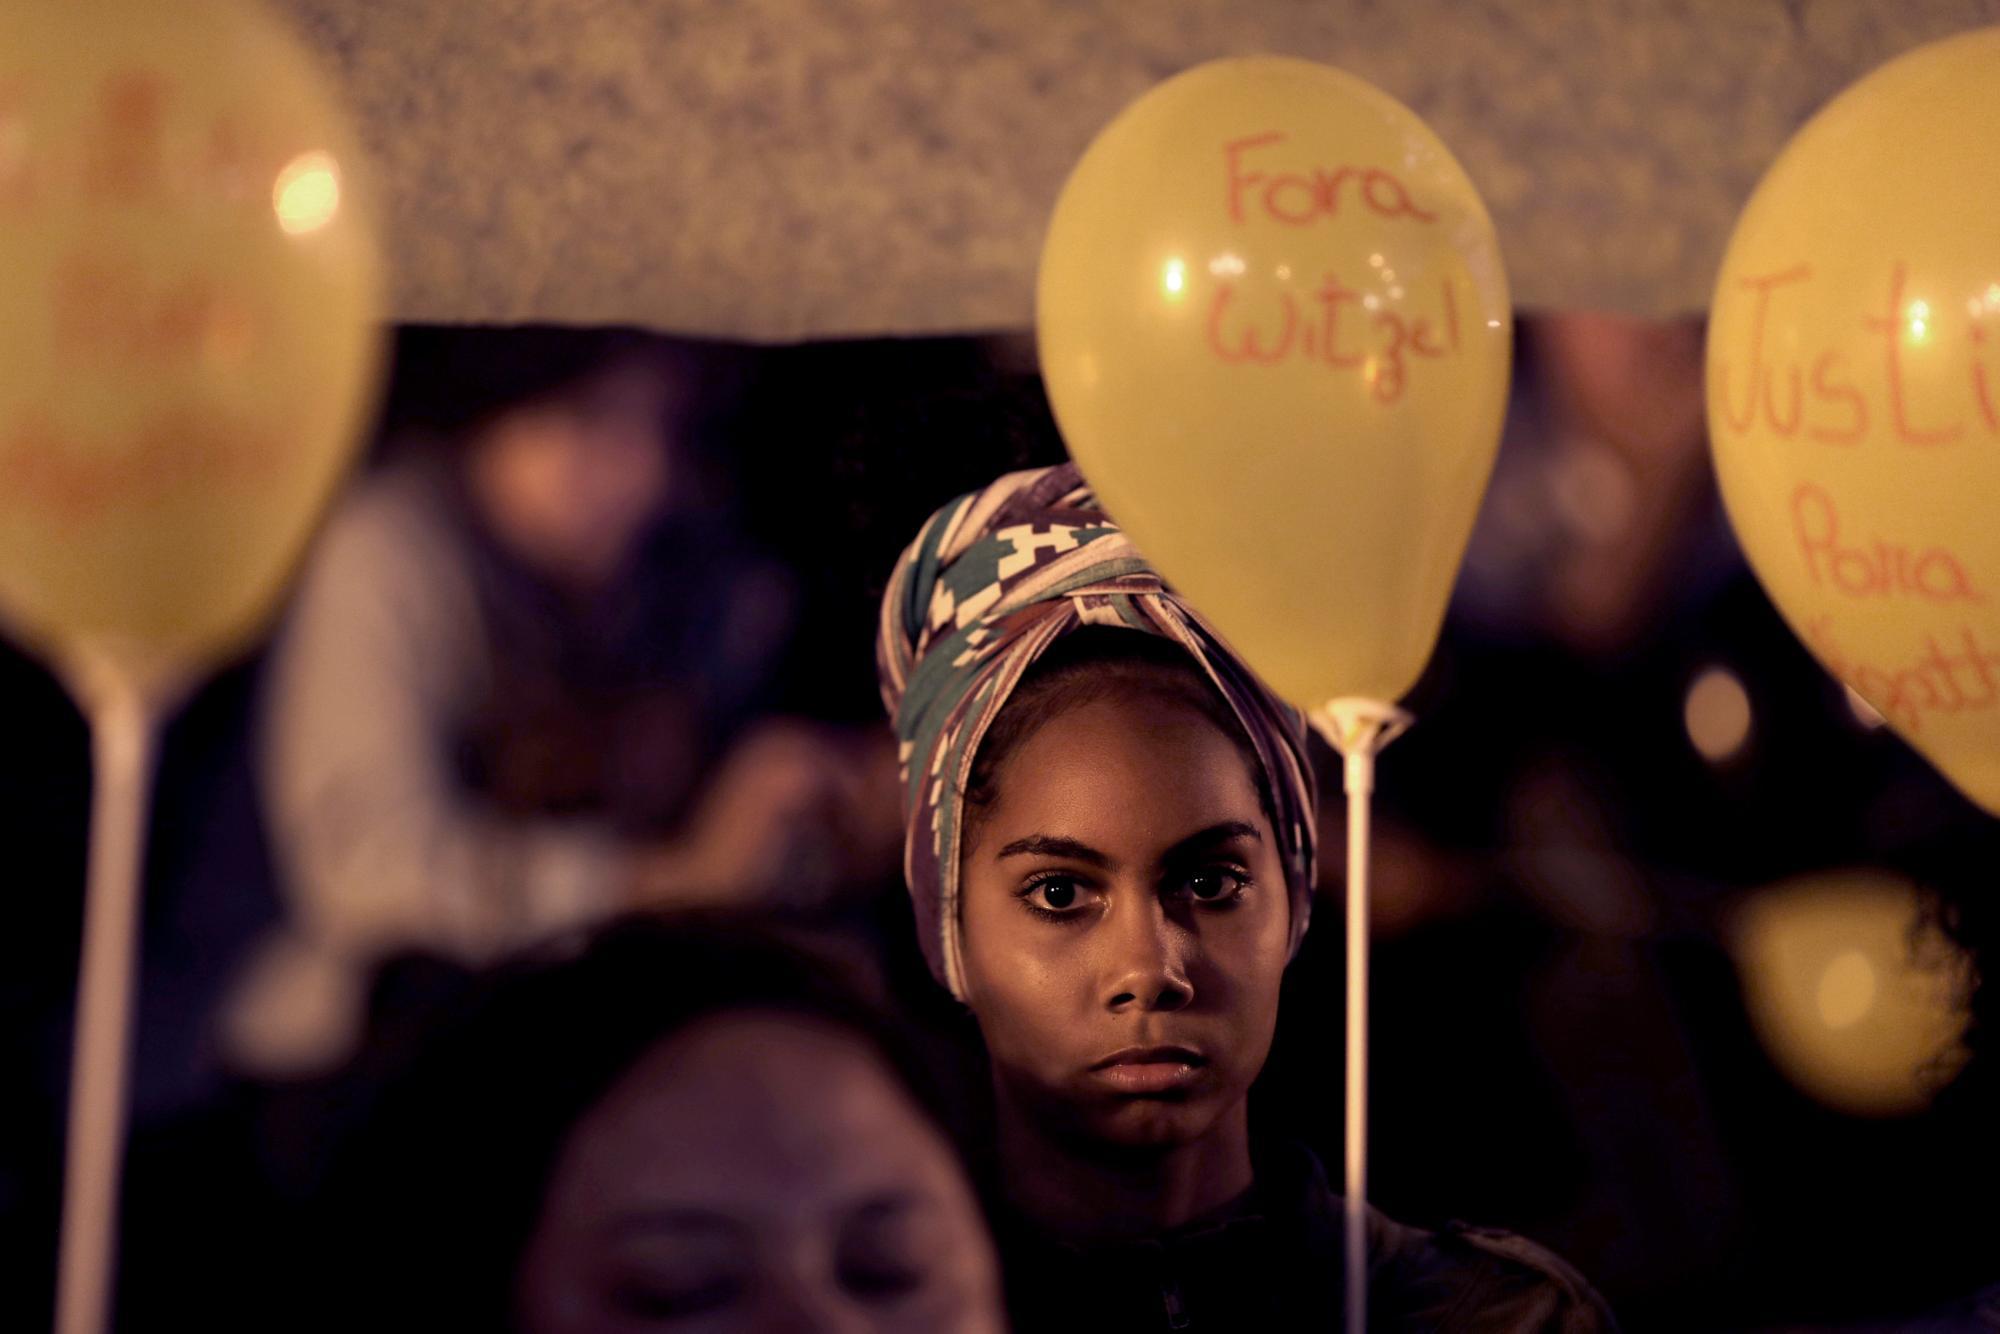 En esta imagen, tomada el 23 de septiembre de 2019, una mujer sostiene un globo amarillo en recuerdo de la niña de 8 años Ágatha Sales Félix durante una protesta contra las fuerzas de seguridad del estado, en Río de Janeiro, Brasil. Ágatha murió por el impacto de una bala perdida, que según denuncias pertenecería a la policía, en la espalda cuando viajaba en una camioneta por la favela de Complexo do Alemao, en Río. (AP Foto/Silvia Izquierdo)